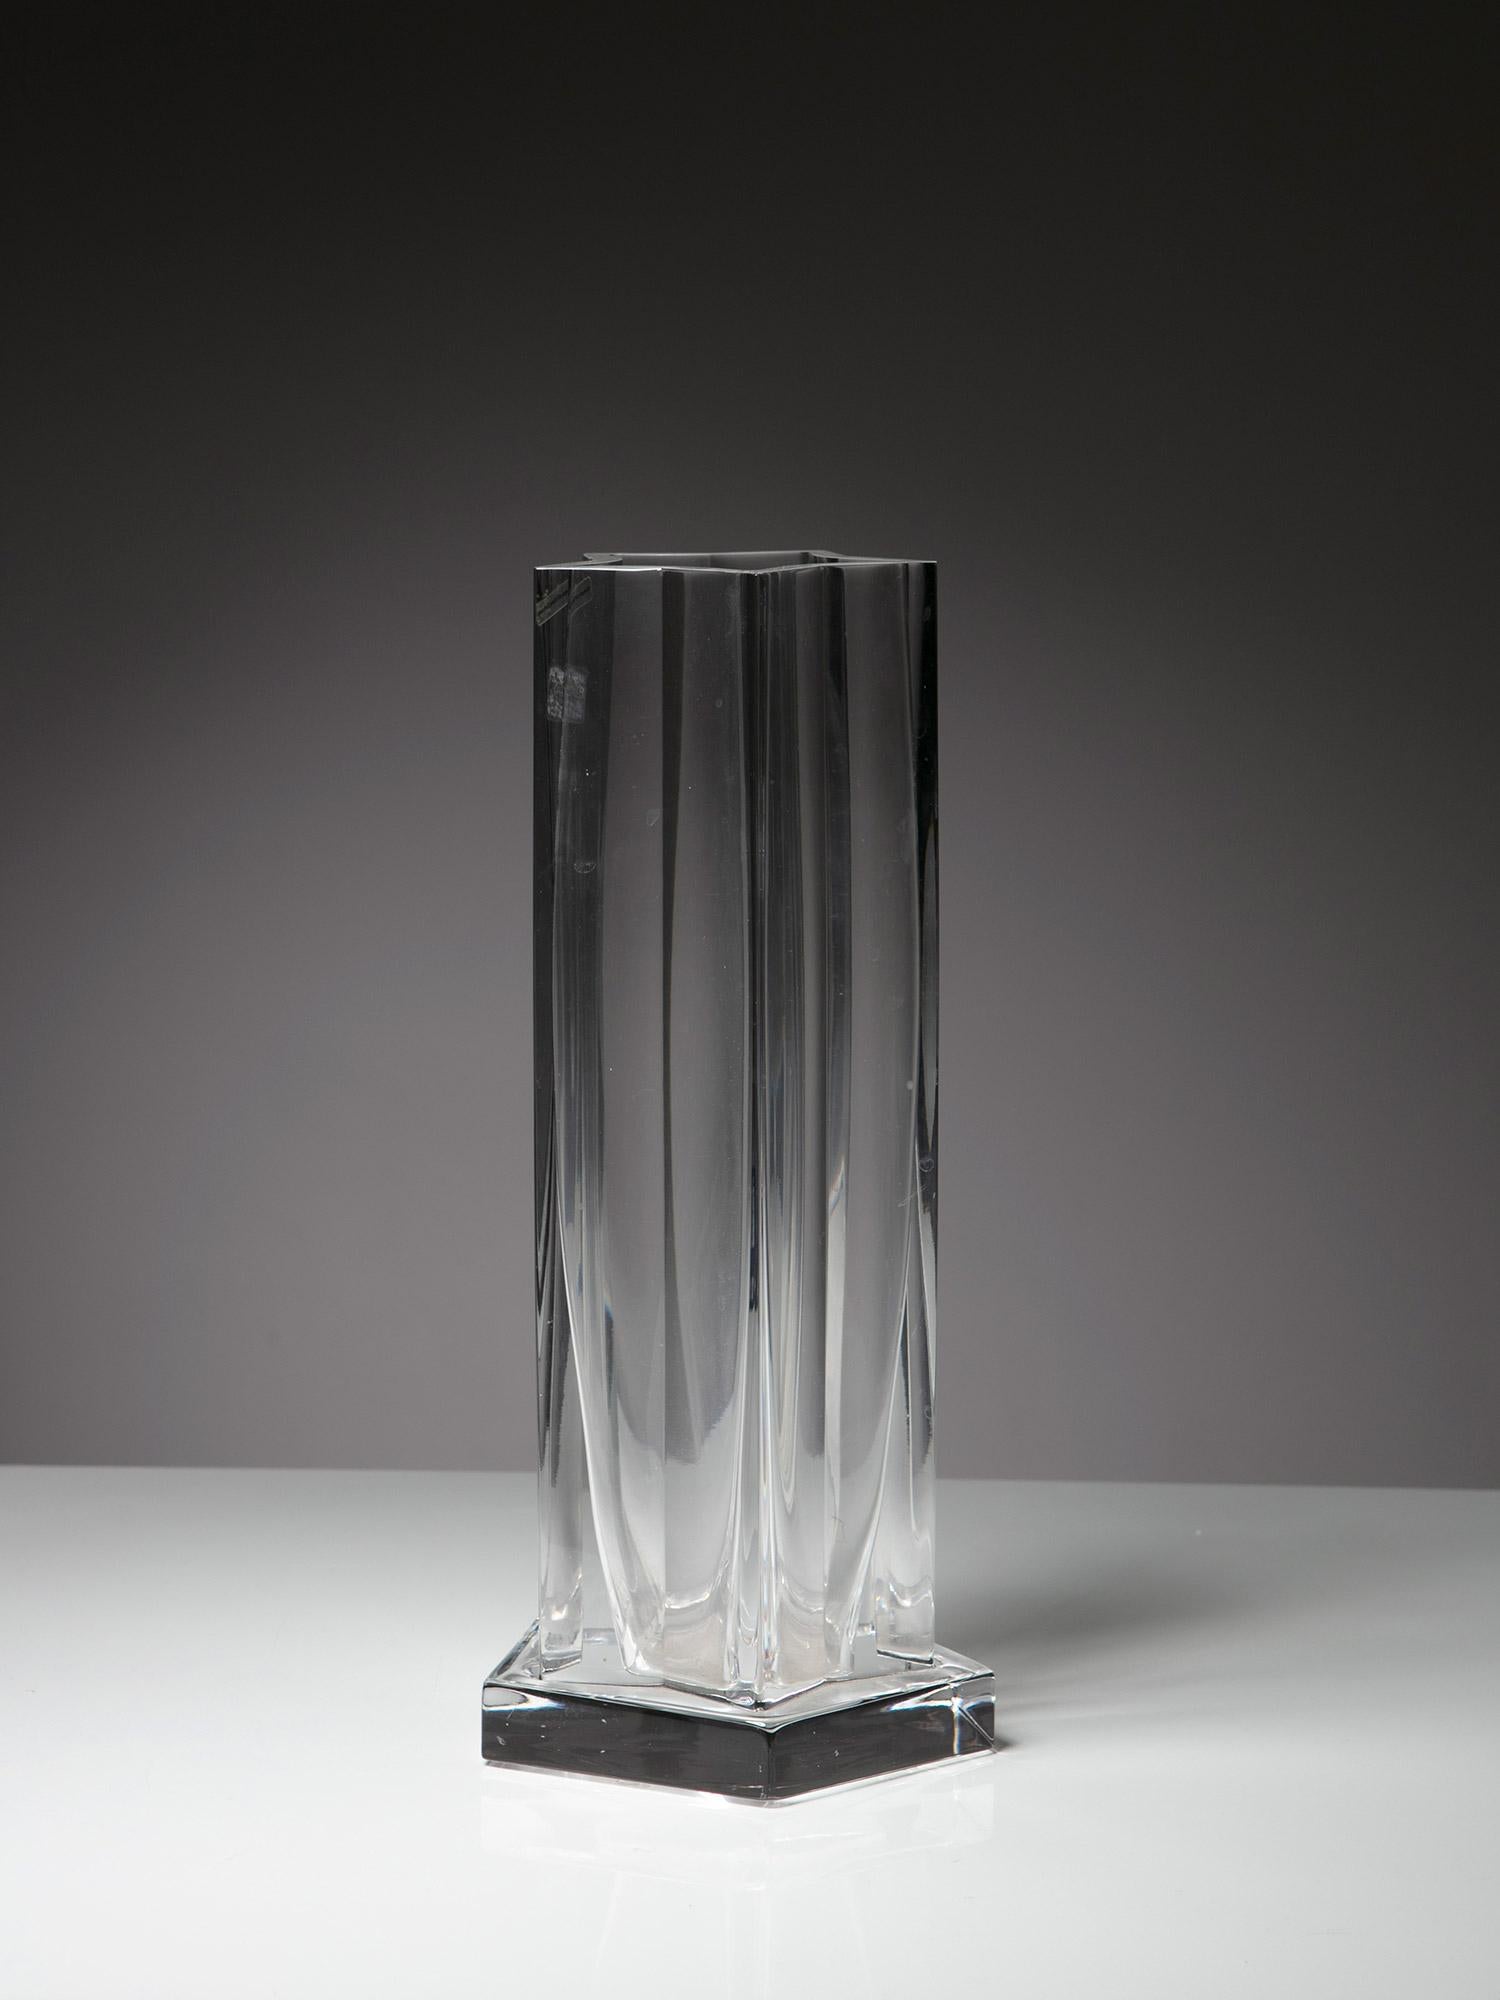 Große sternförmige Kristallvase von Ettore Sottsass für Arnolfo di Cambio.
Unbenutztes Stück mit Originalaufklebern 
